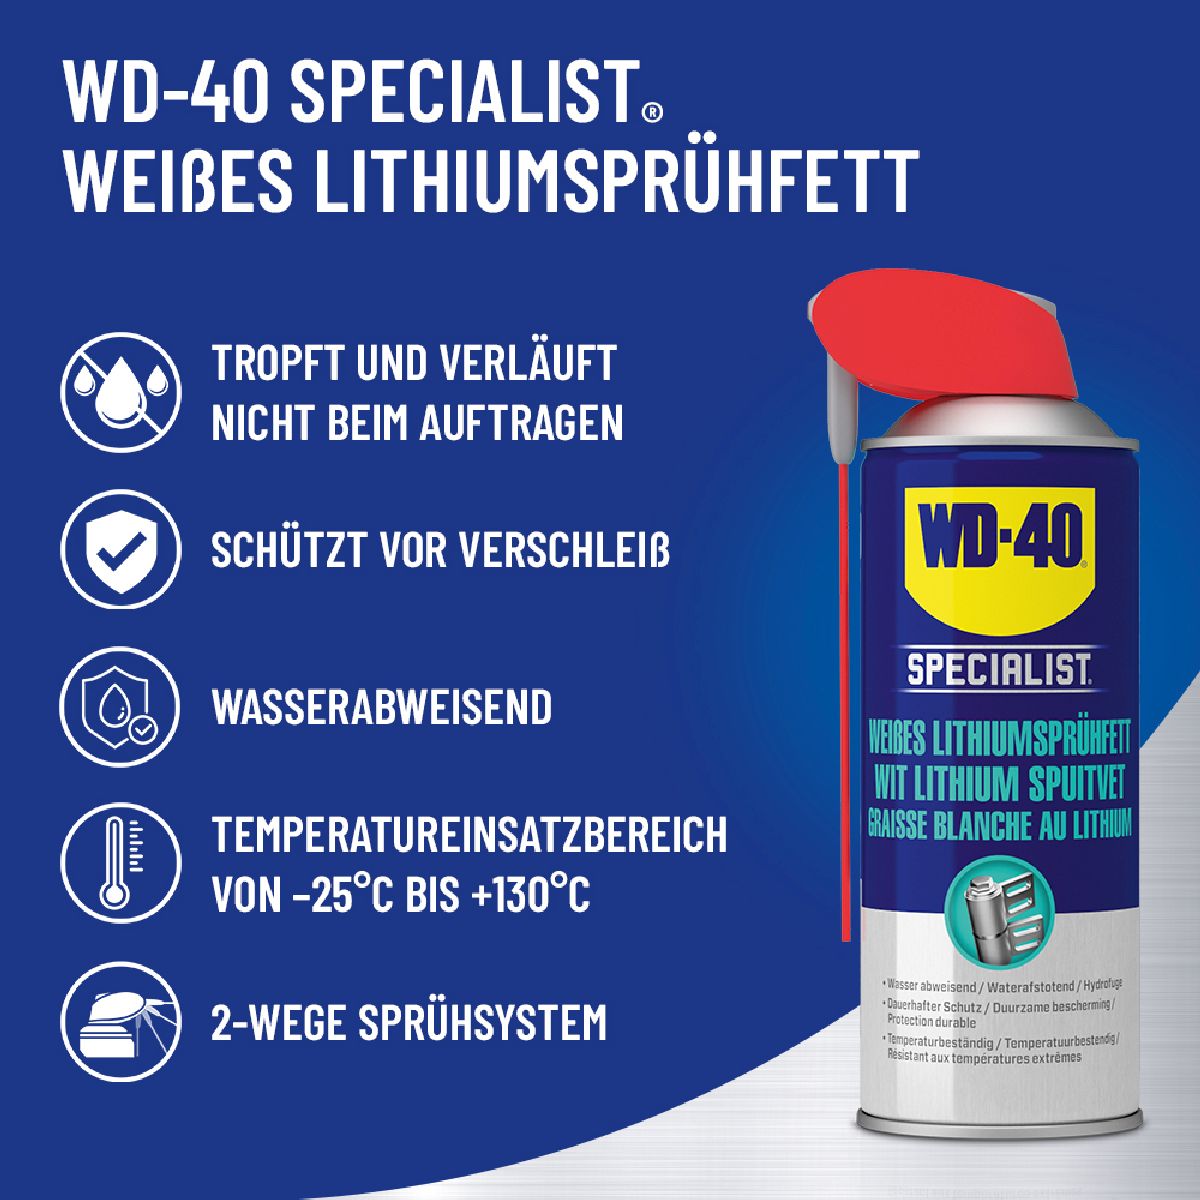 WD-40 Specialist Weisses Lithiumsprhfett 300ml